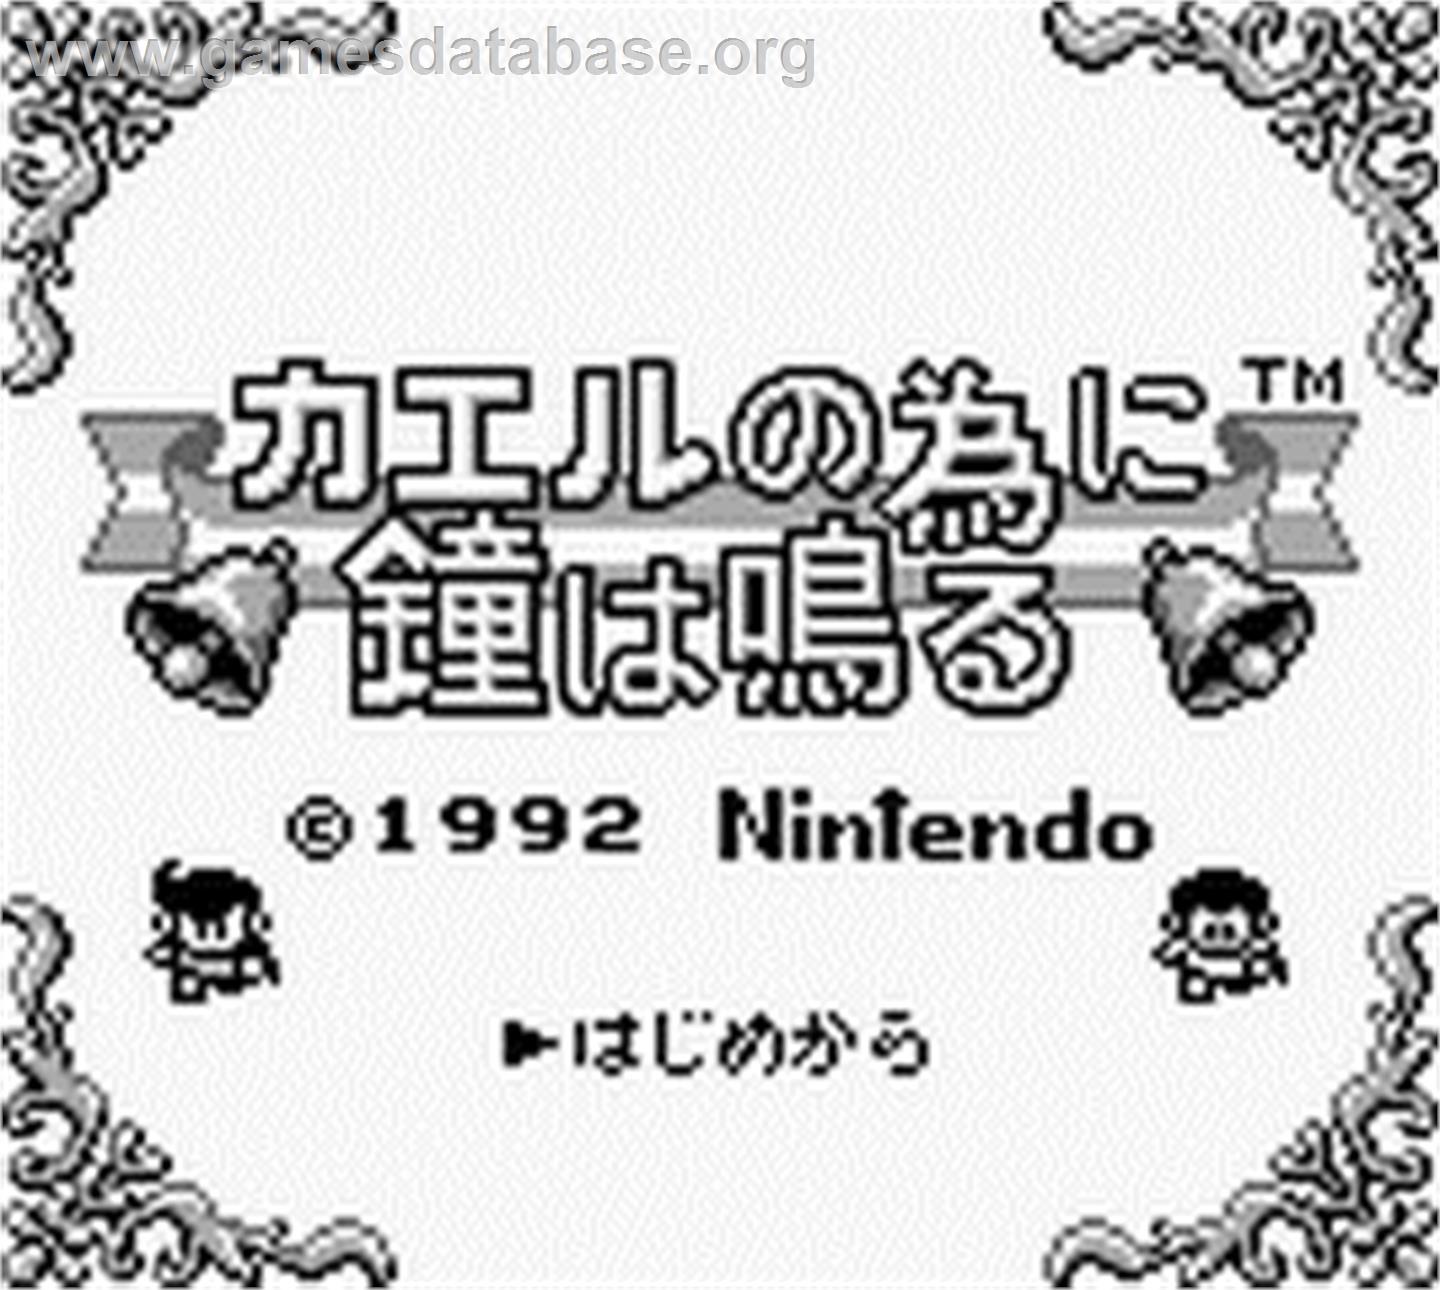 Kaeru no tame ni Kane wa Naru - Nintendo Game Boy - Artwork - Title Screen